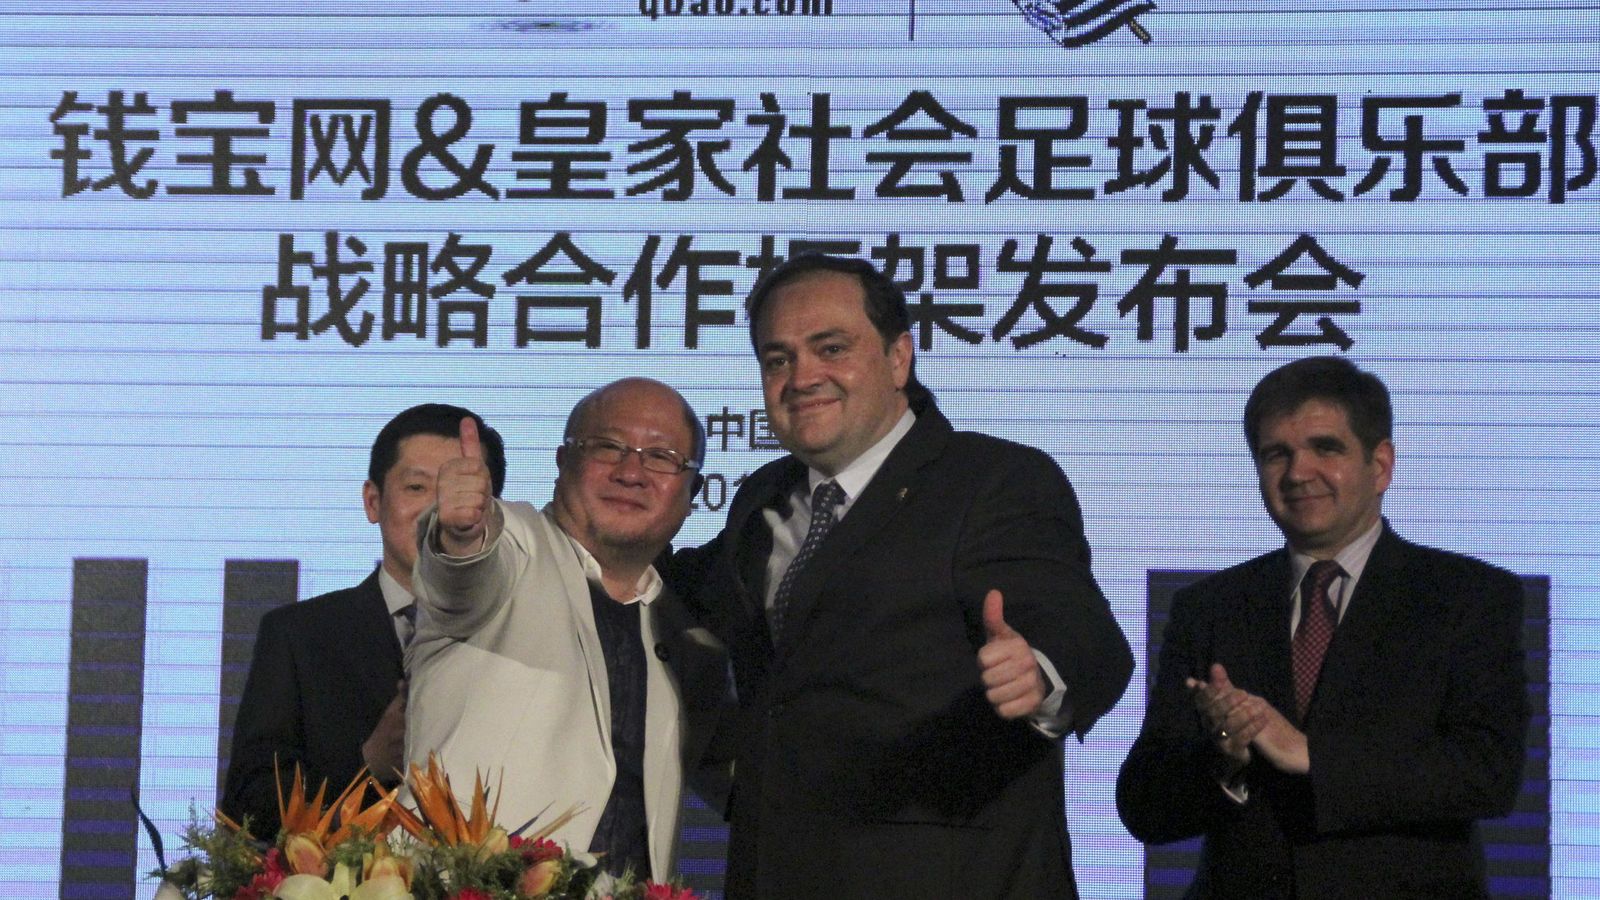 Foto: Jokin Aperribay, presidente de la Real Sociedad, durante la ampliación del acuerdo con Qbao.com (EFE)